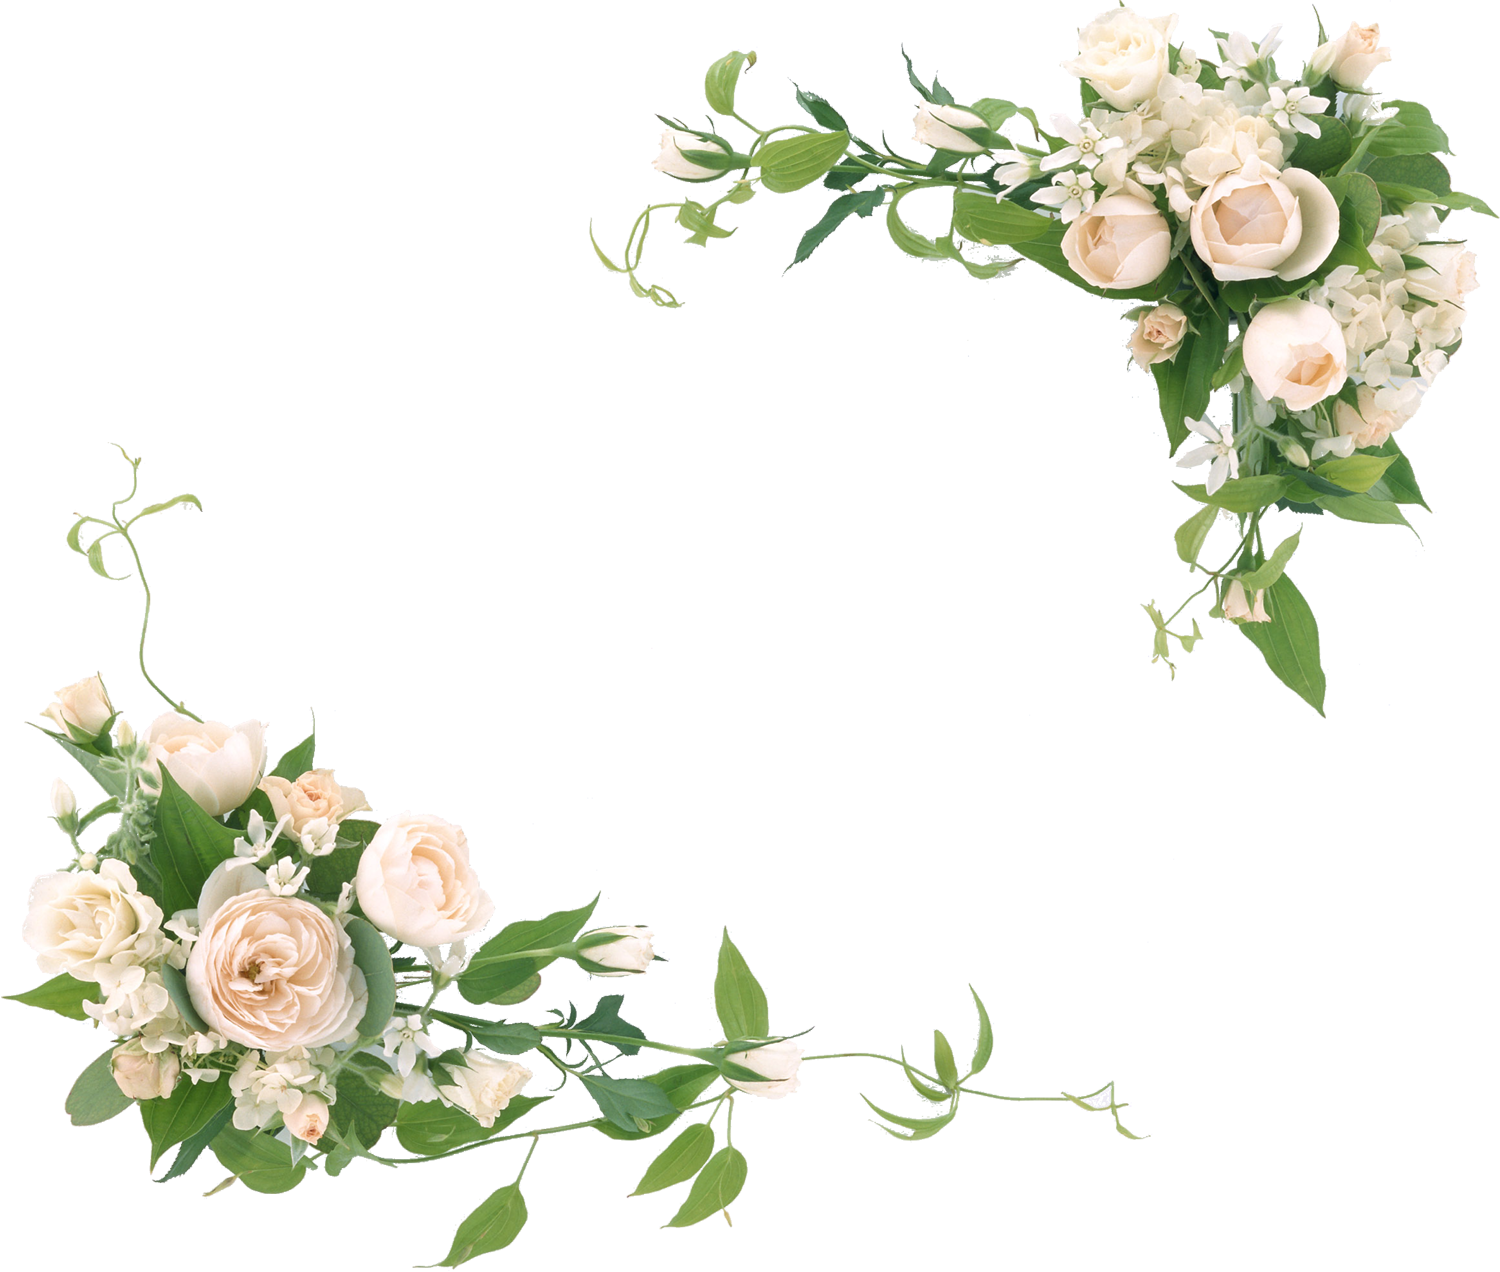 白い花の写真 フリー素材 No 611 白バラ 緑葉